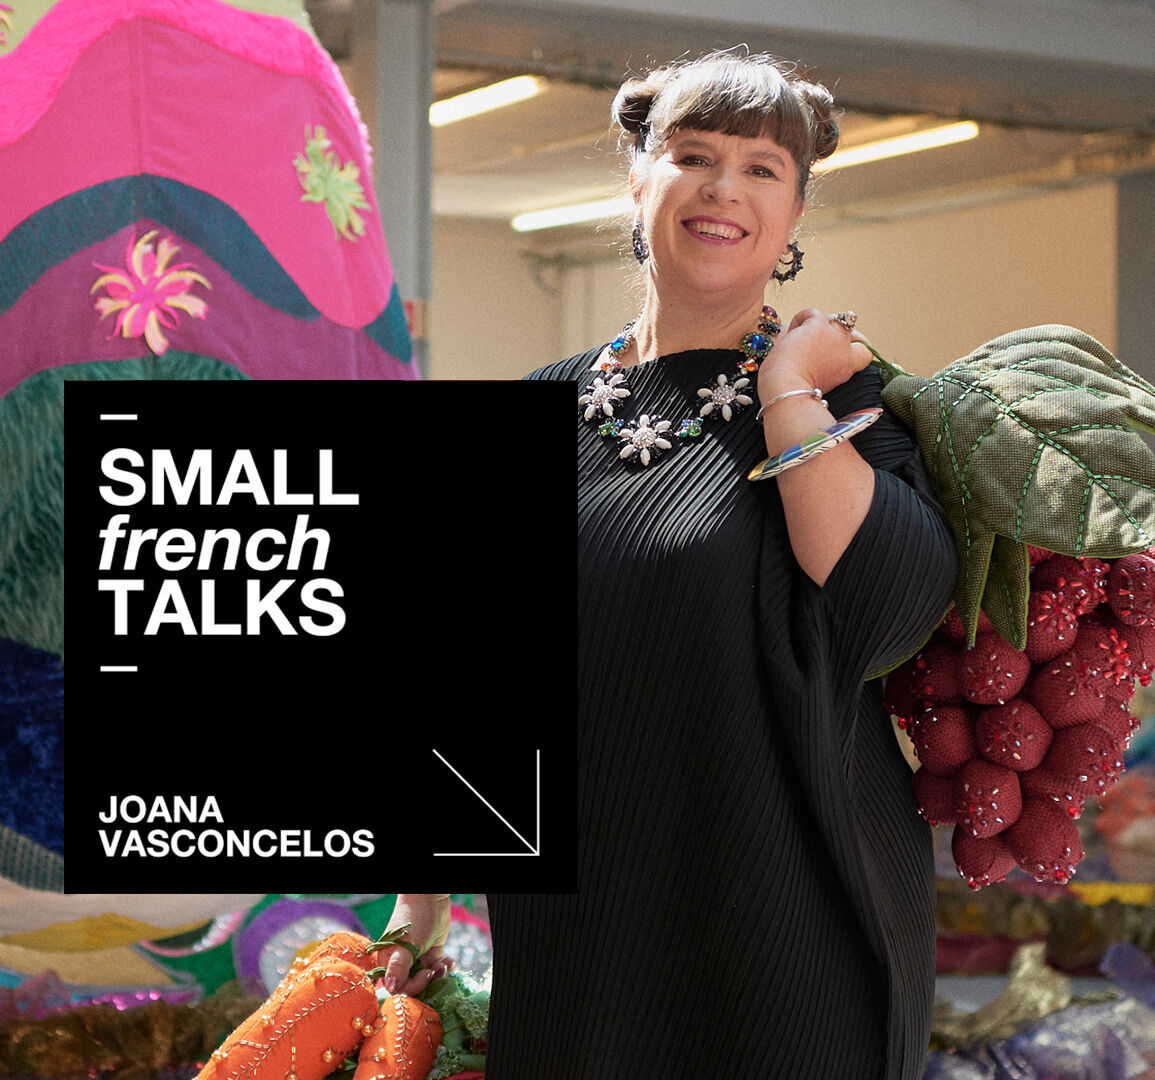 Small French Talks with Joana Vasconcelos